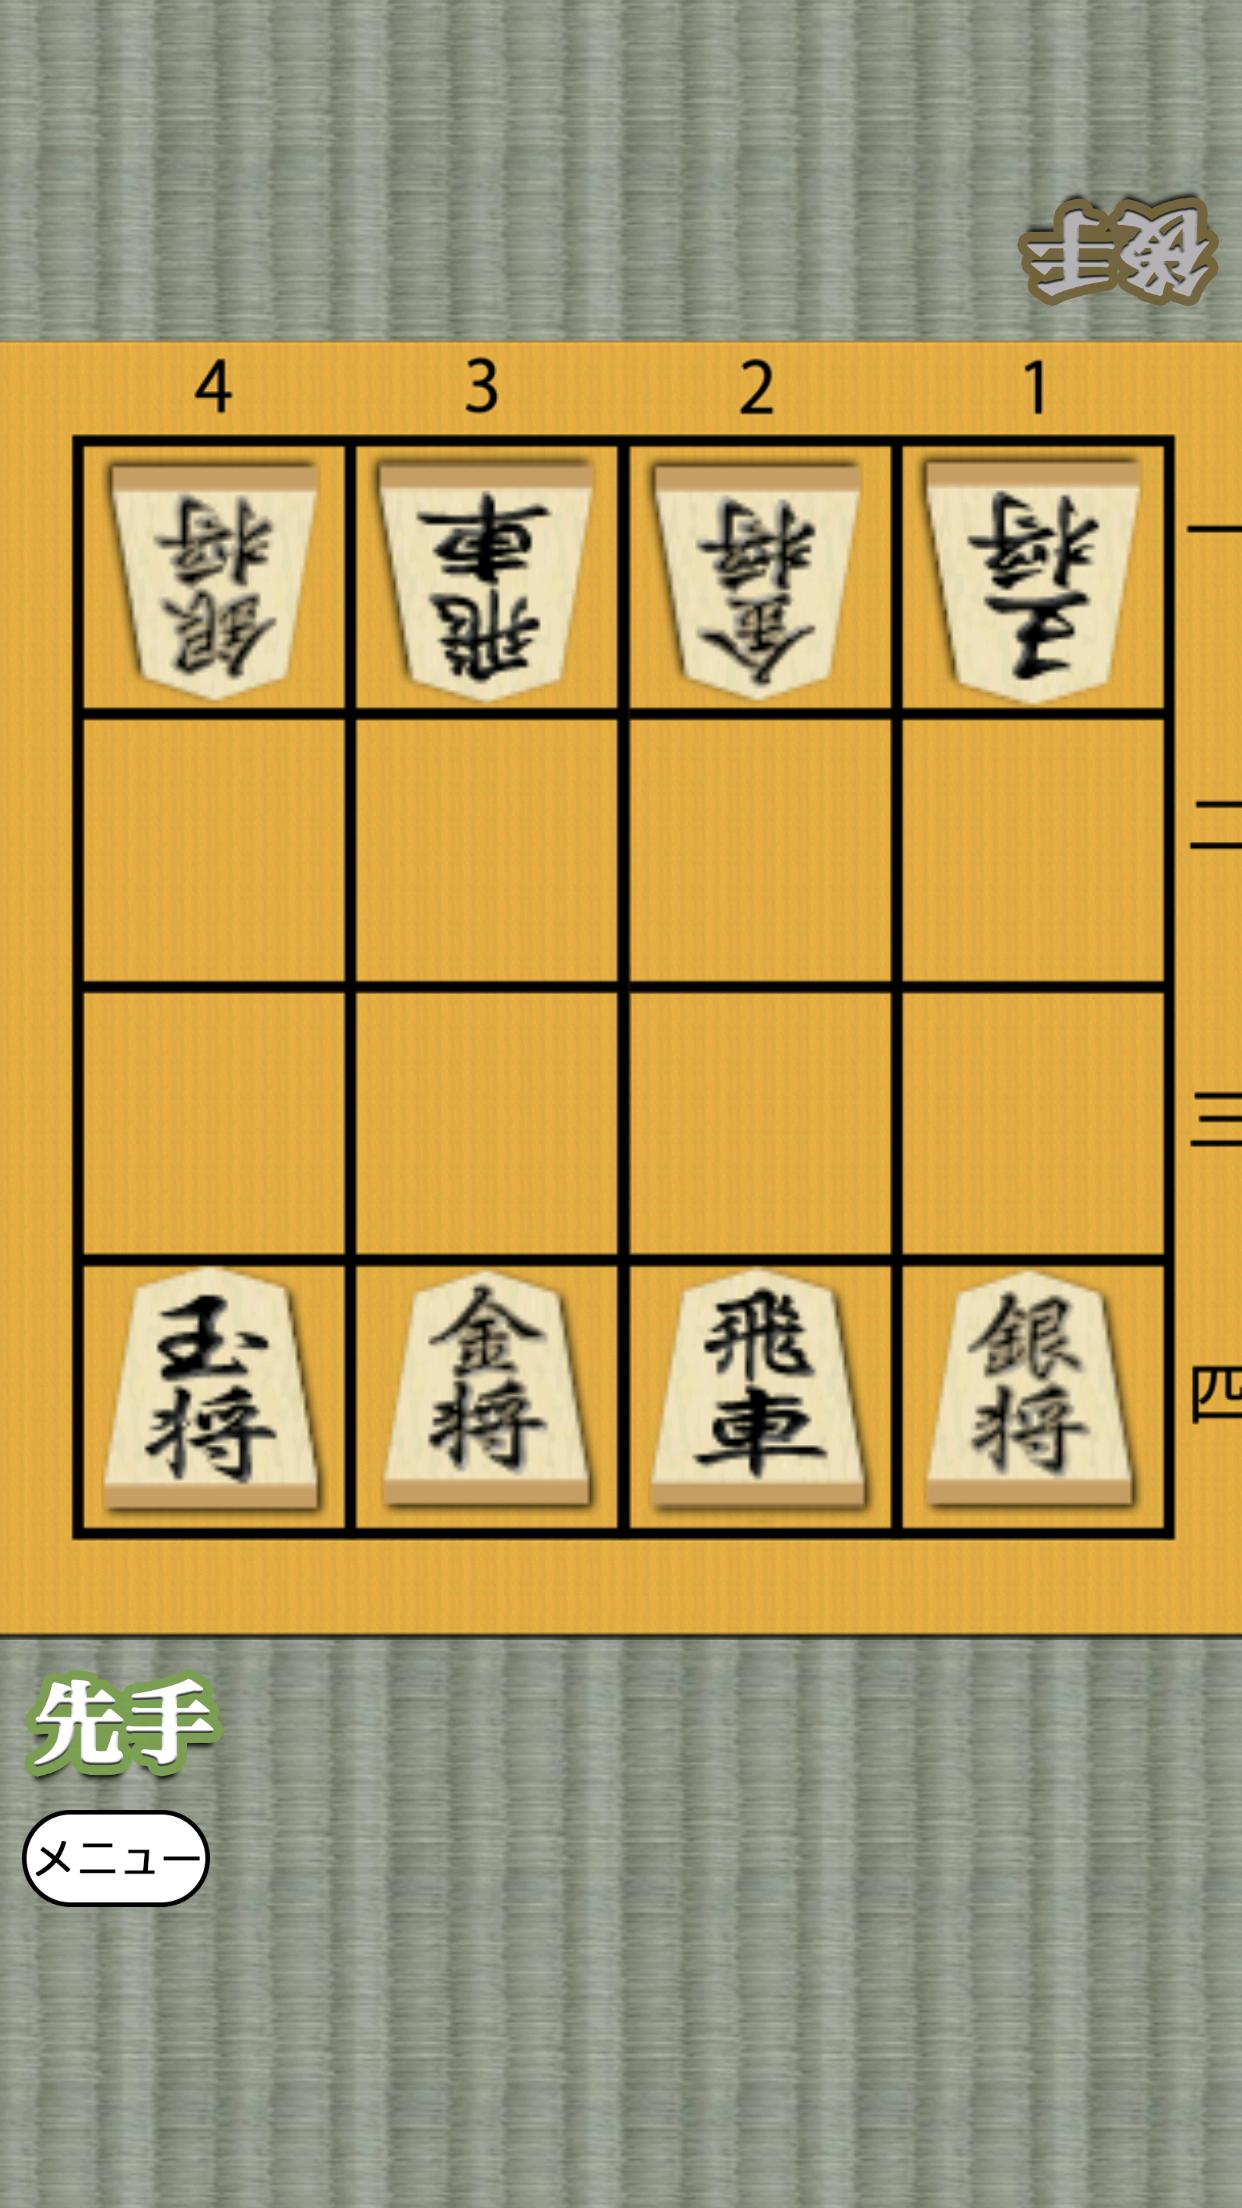 Shogi for beginners 1.0.4 Screenshot 11